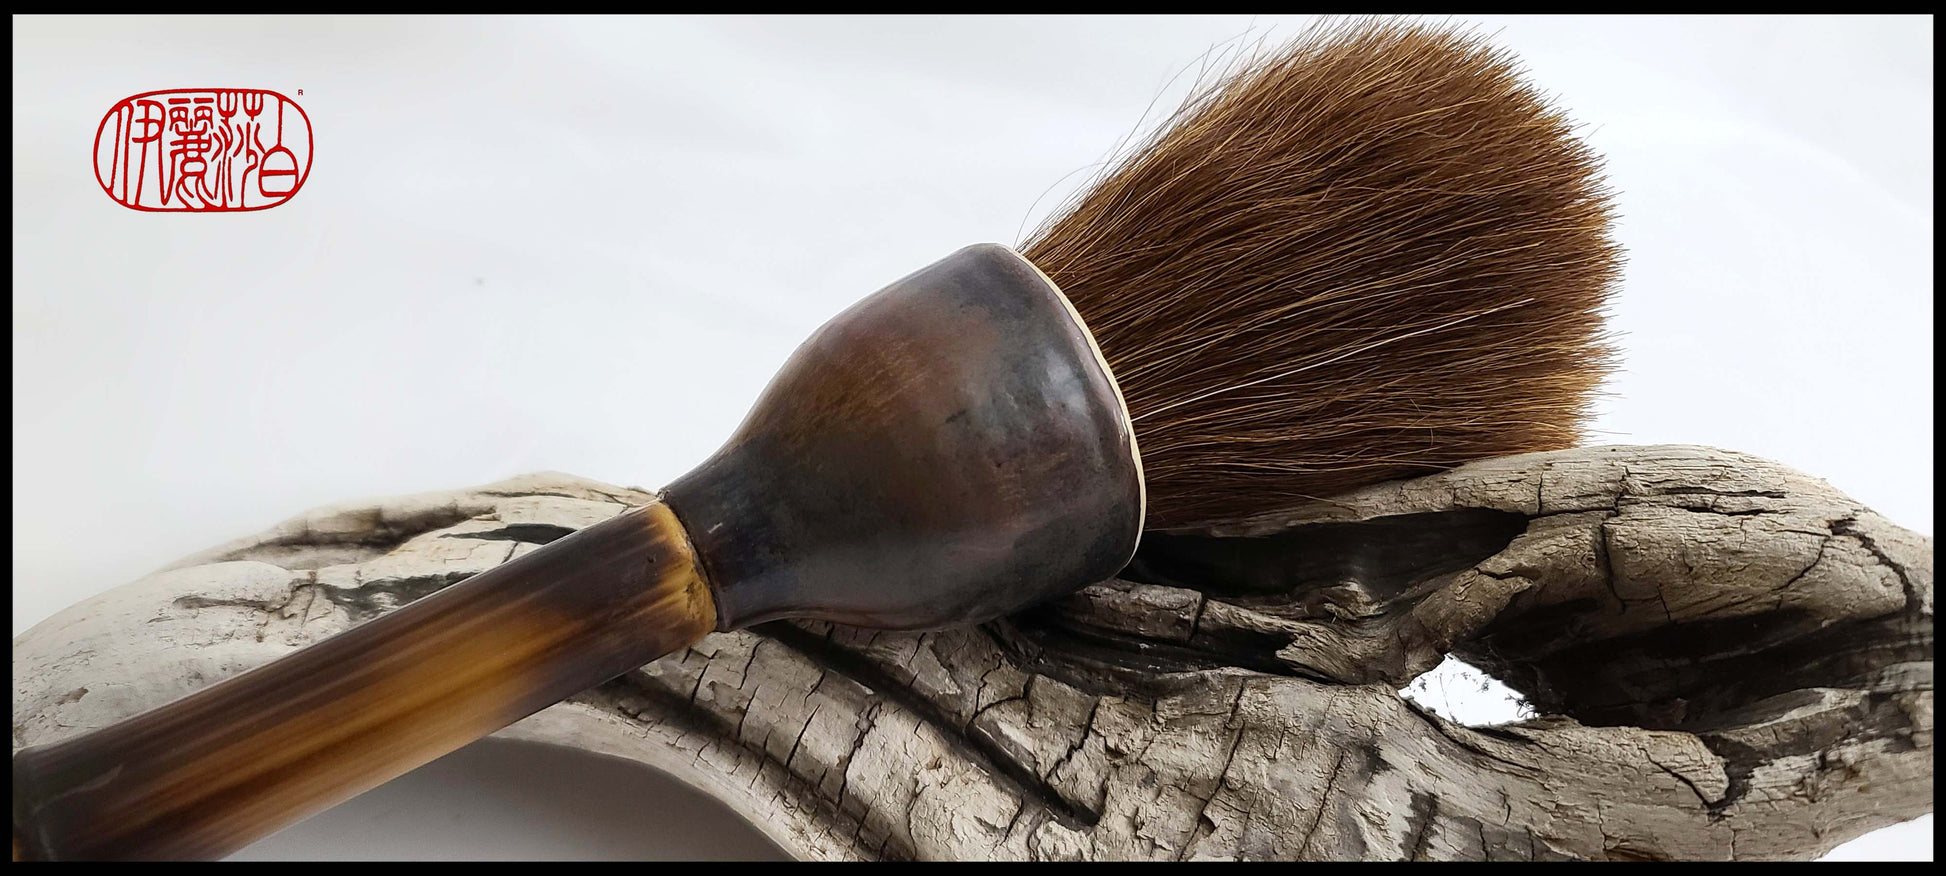 Auburn Horsehair Sumi-e Paint Brush with Ceramic Ferrule LSB#1 Art Supplies Elizabeth Schowachert Art